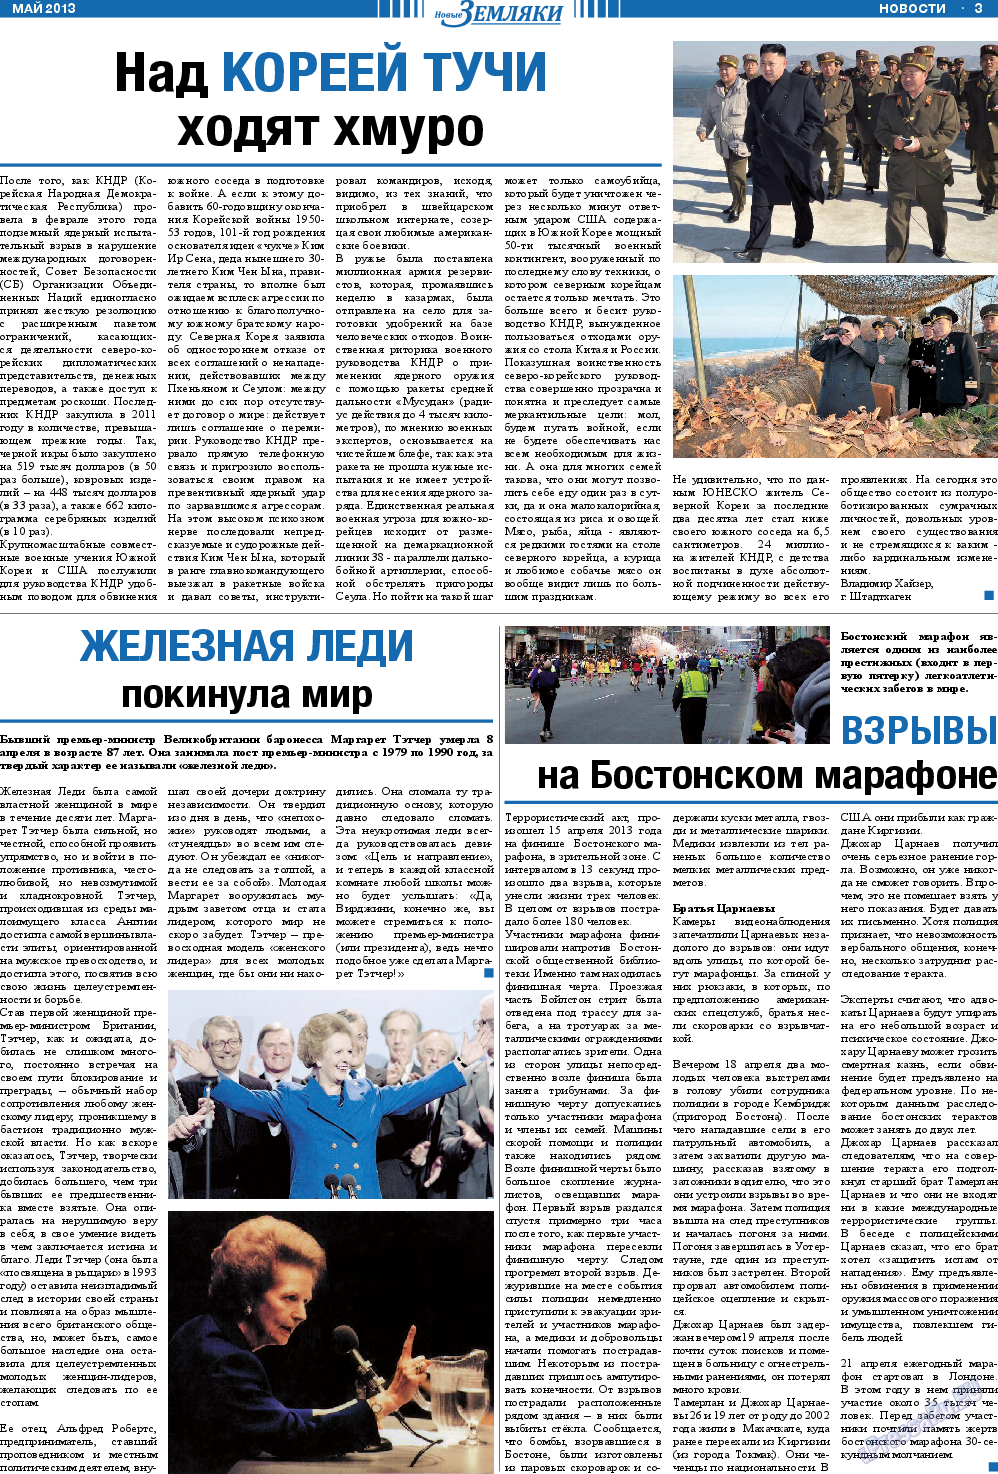 Новые Земляки, газета. 2013 №5 стр.3